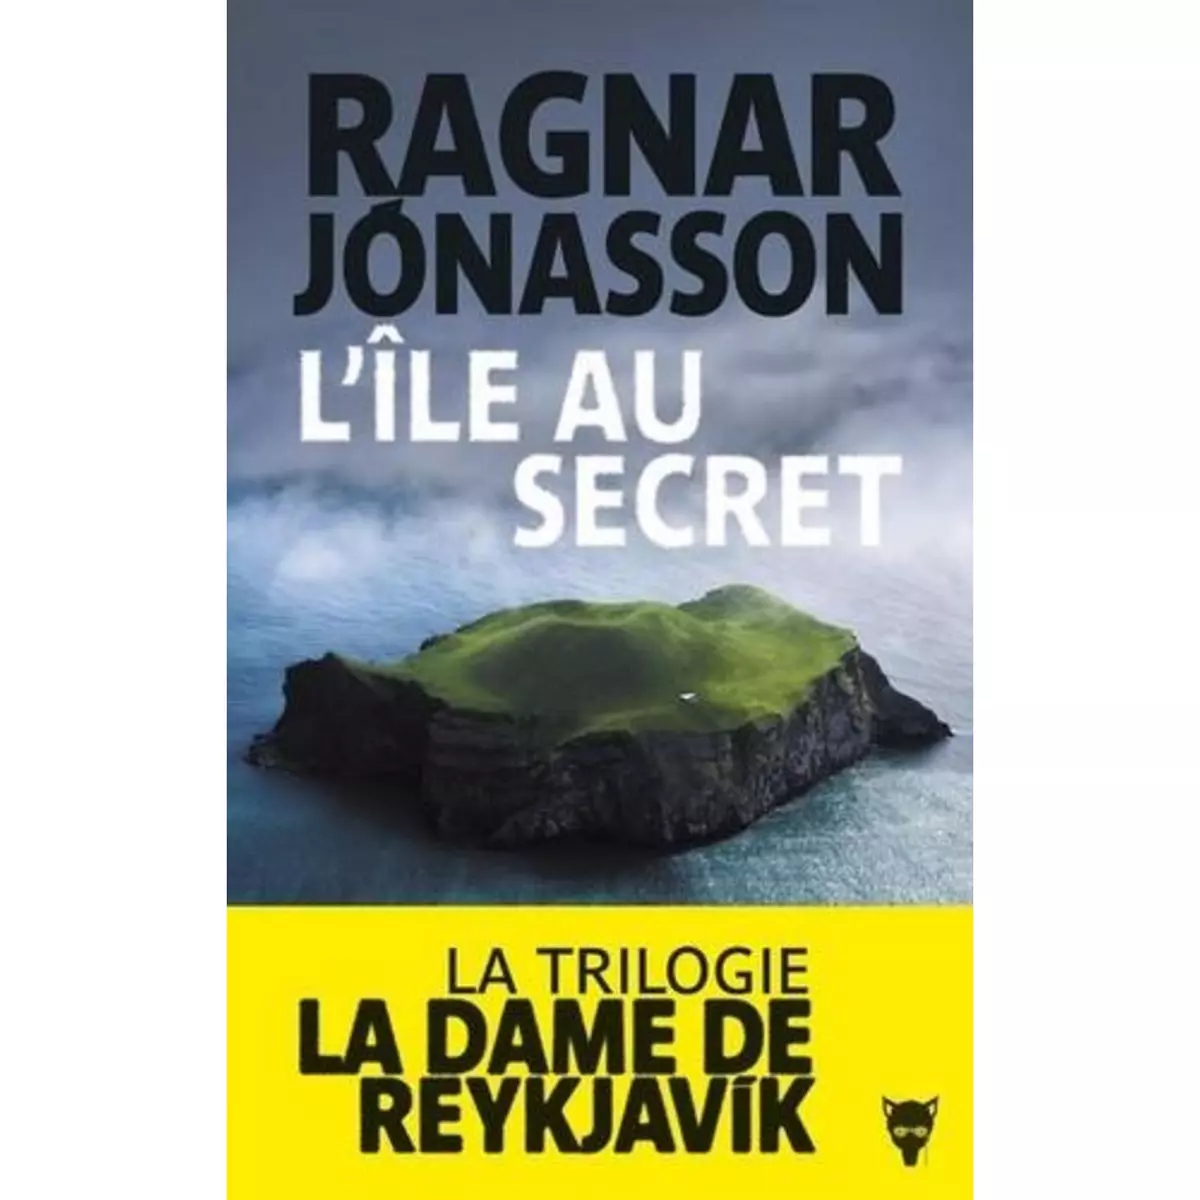  LA DAME DE REYKJAVIK : L'ILE AU SECRET, Jónasson Ragnar